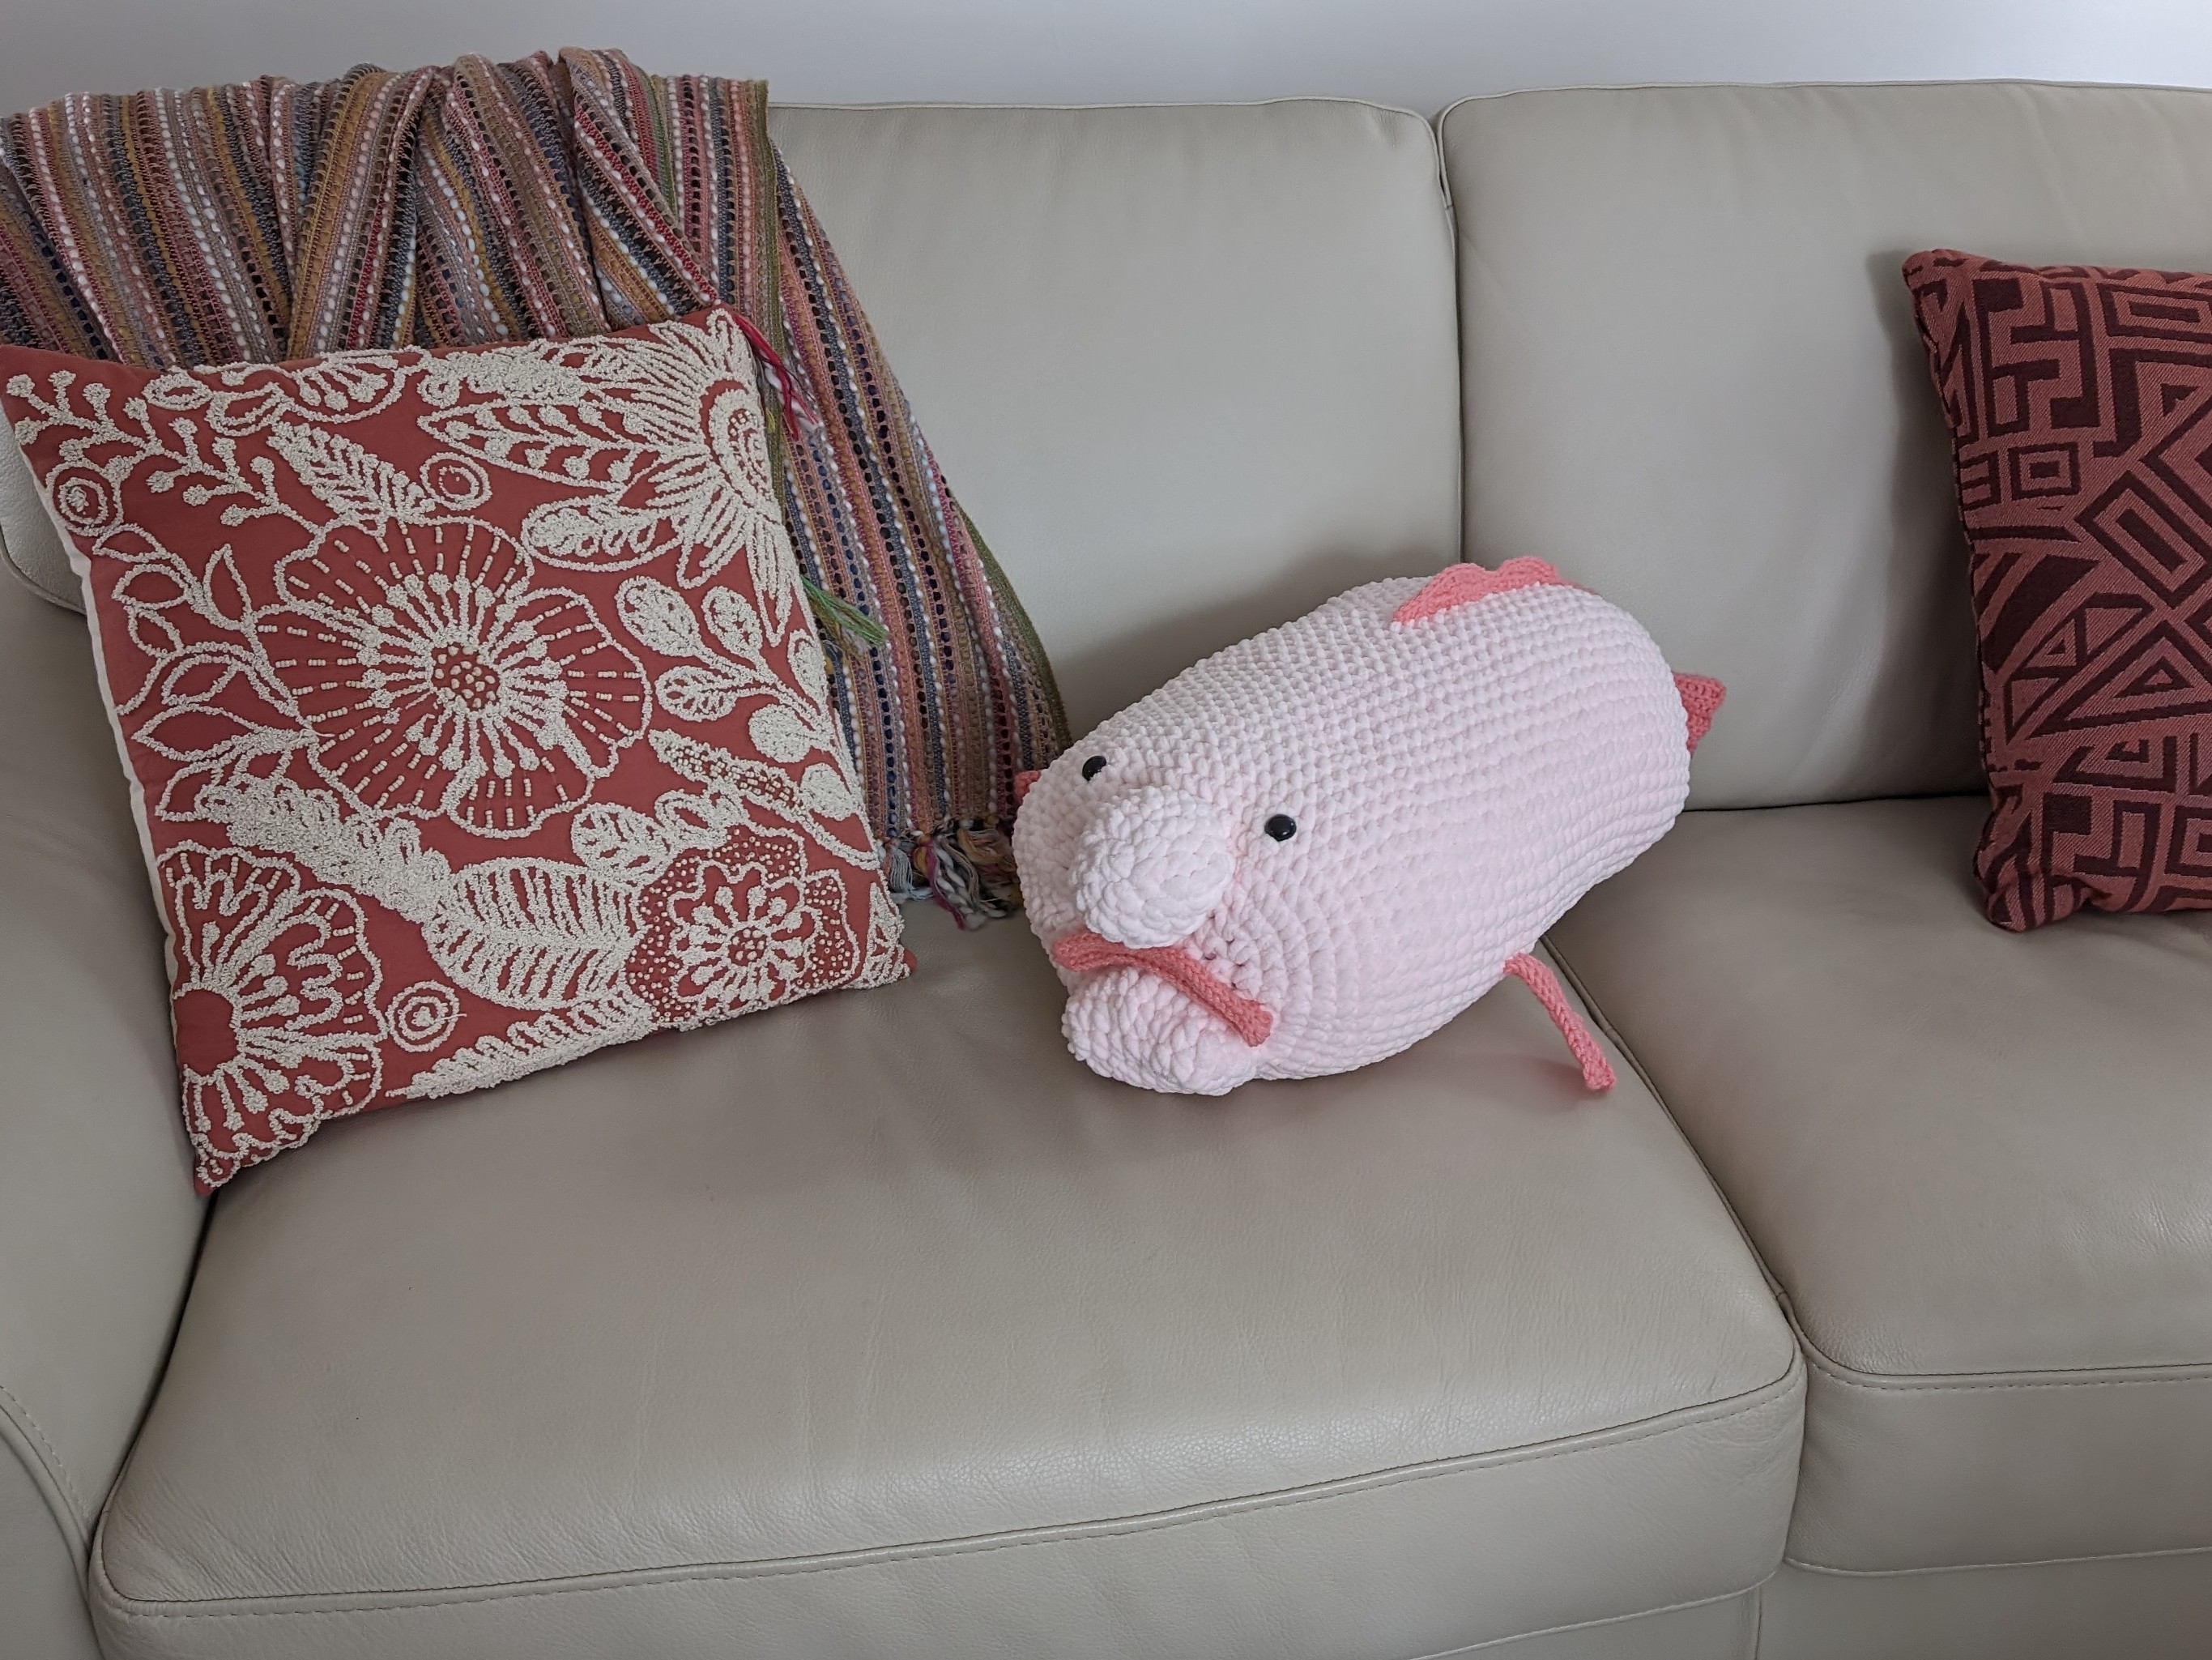 Blobfish Cushion